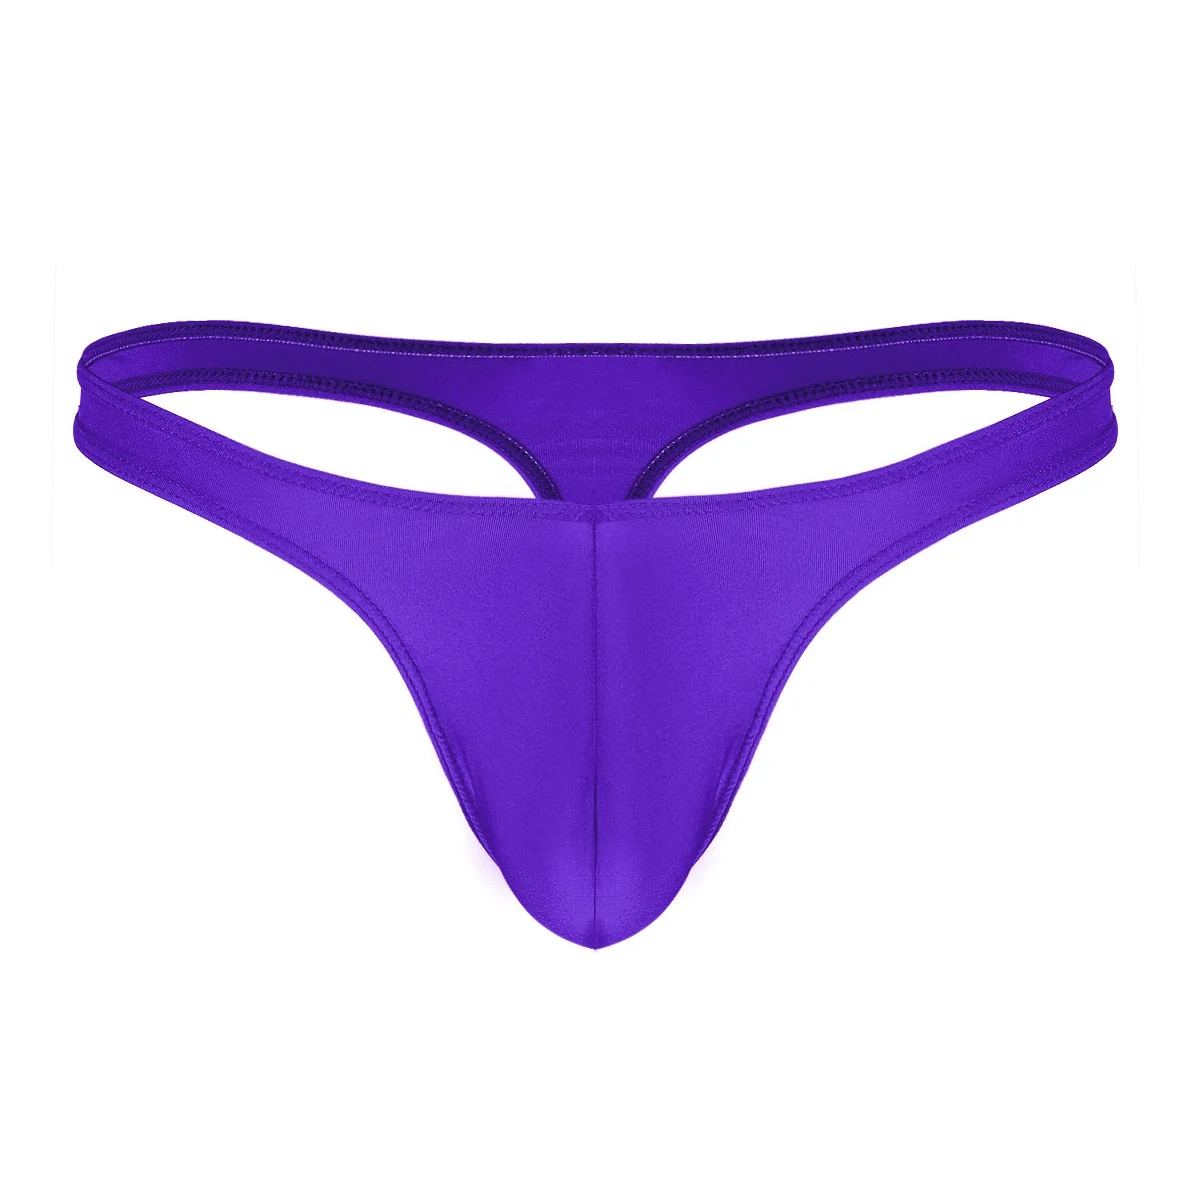 Мужские бикини стринги с Т-образной спинкой нижнее белье сексуальное нижнее белье с низкой посадкой булге мешочек воздухопроницаемые бикини стринги t-образные Стринги мужские - Цвет: Purple